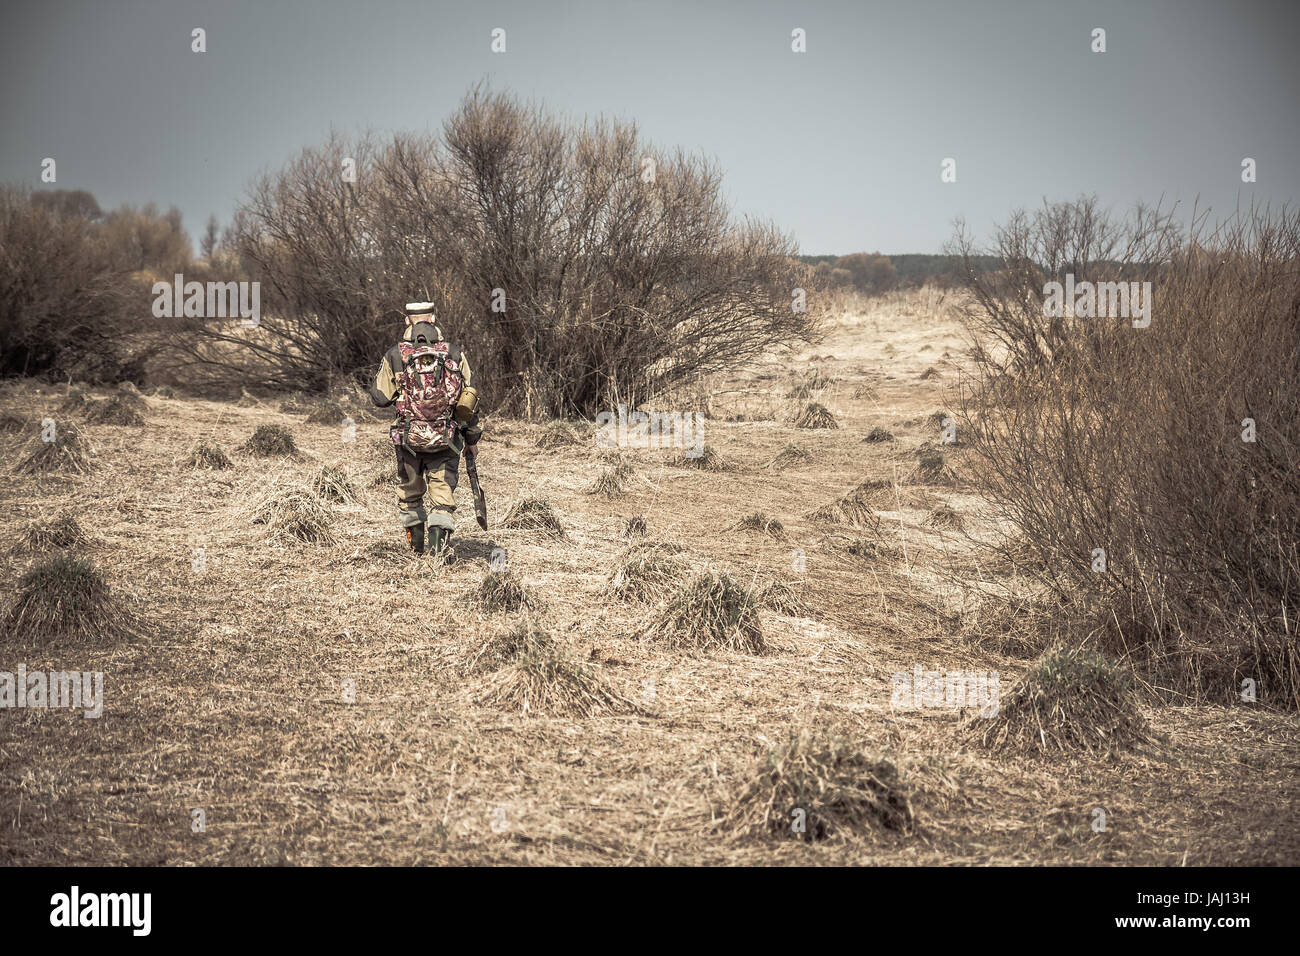 Hunter uomo in camuffamento con la pistola passando attraverso la zona rurale con erba secca e cespugli durante la caccia Foto Stock